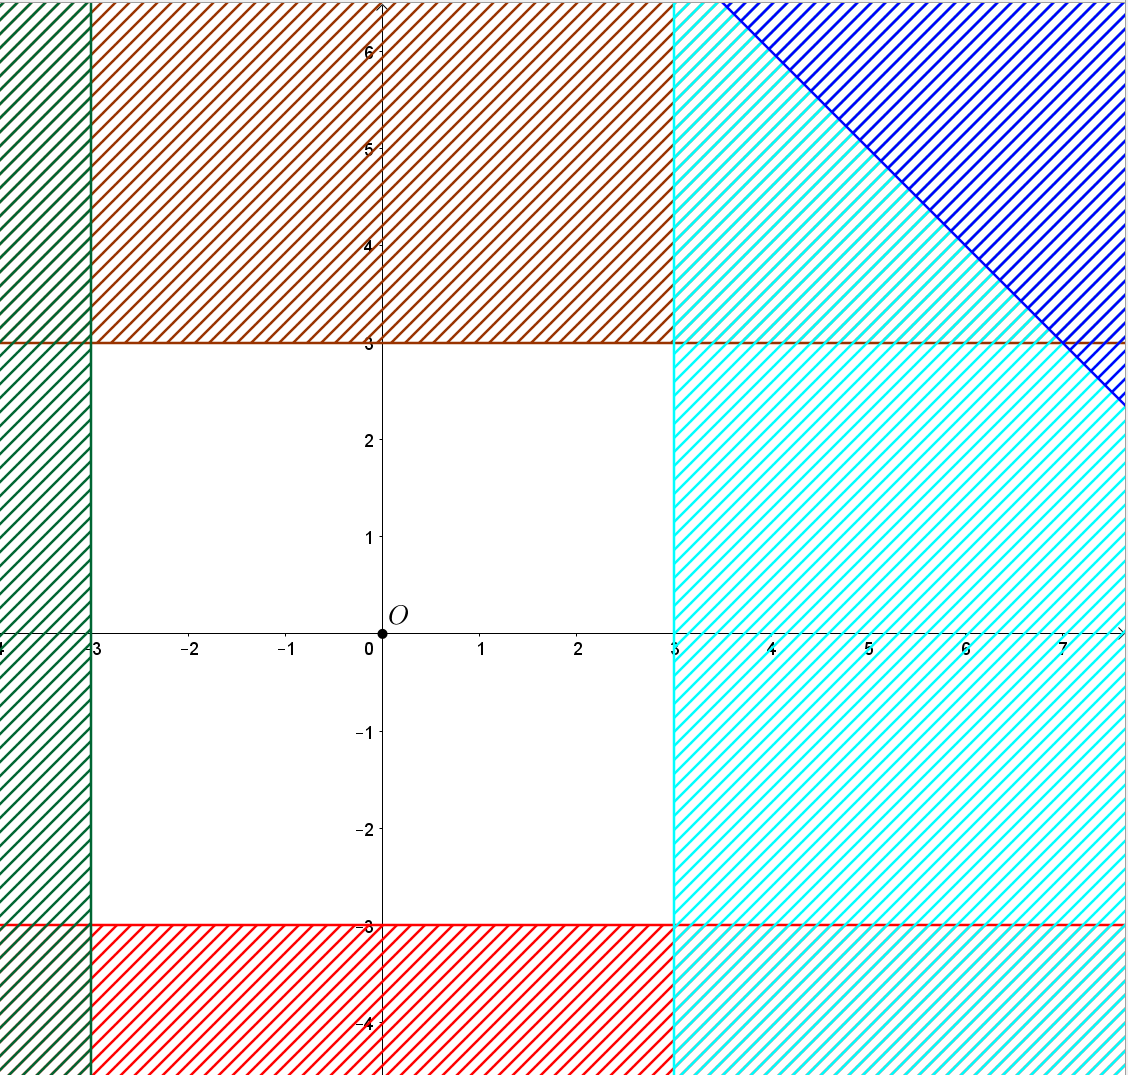 Miền nghiệm của hệ bất phương trình  là x + y nhỏ hơn hoặc bằng 10; - 3 nhỏ hơn hoặc bằng y nhỏ hơn hoặc bằng 3; - 3 nhỏ hơn hoặc bằng x nhỏ hơn hoặc bằng 3 (ảnh 2)